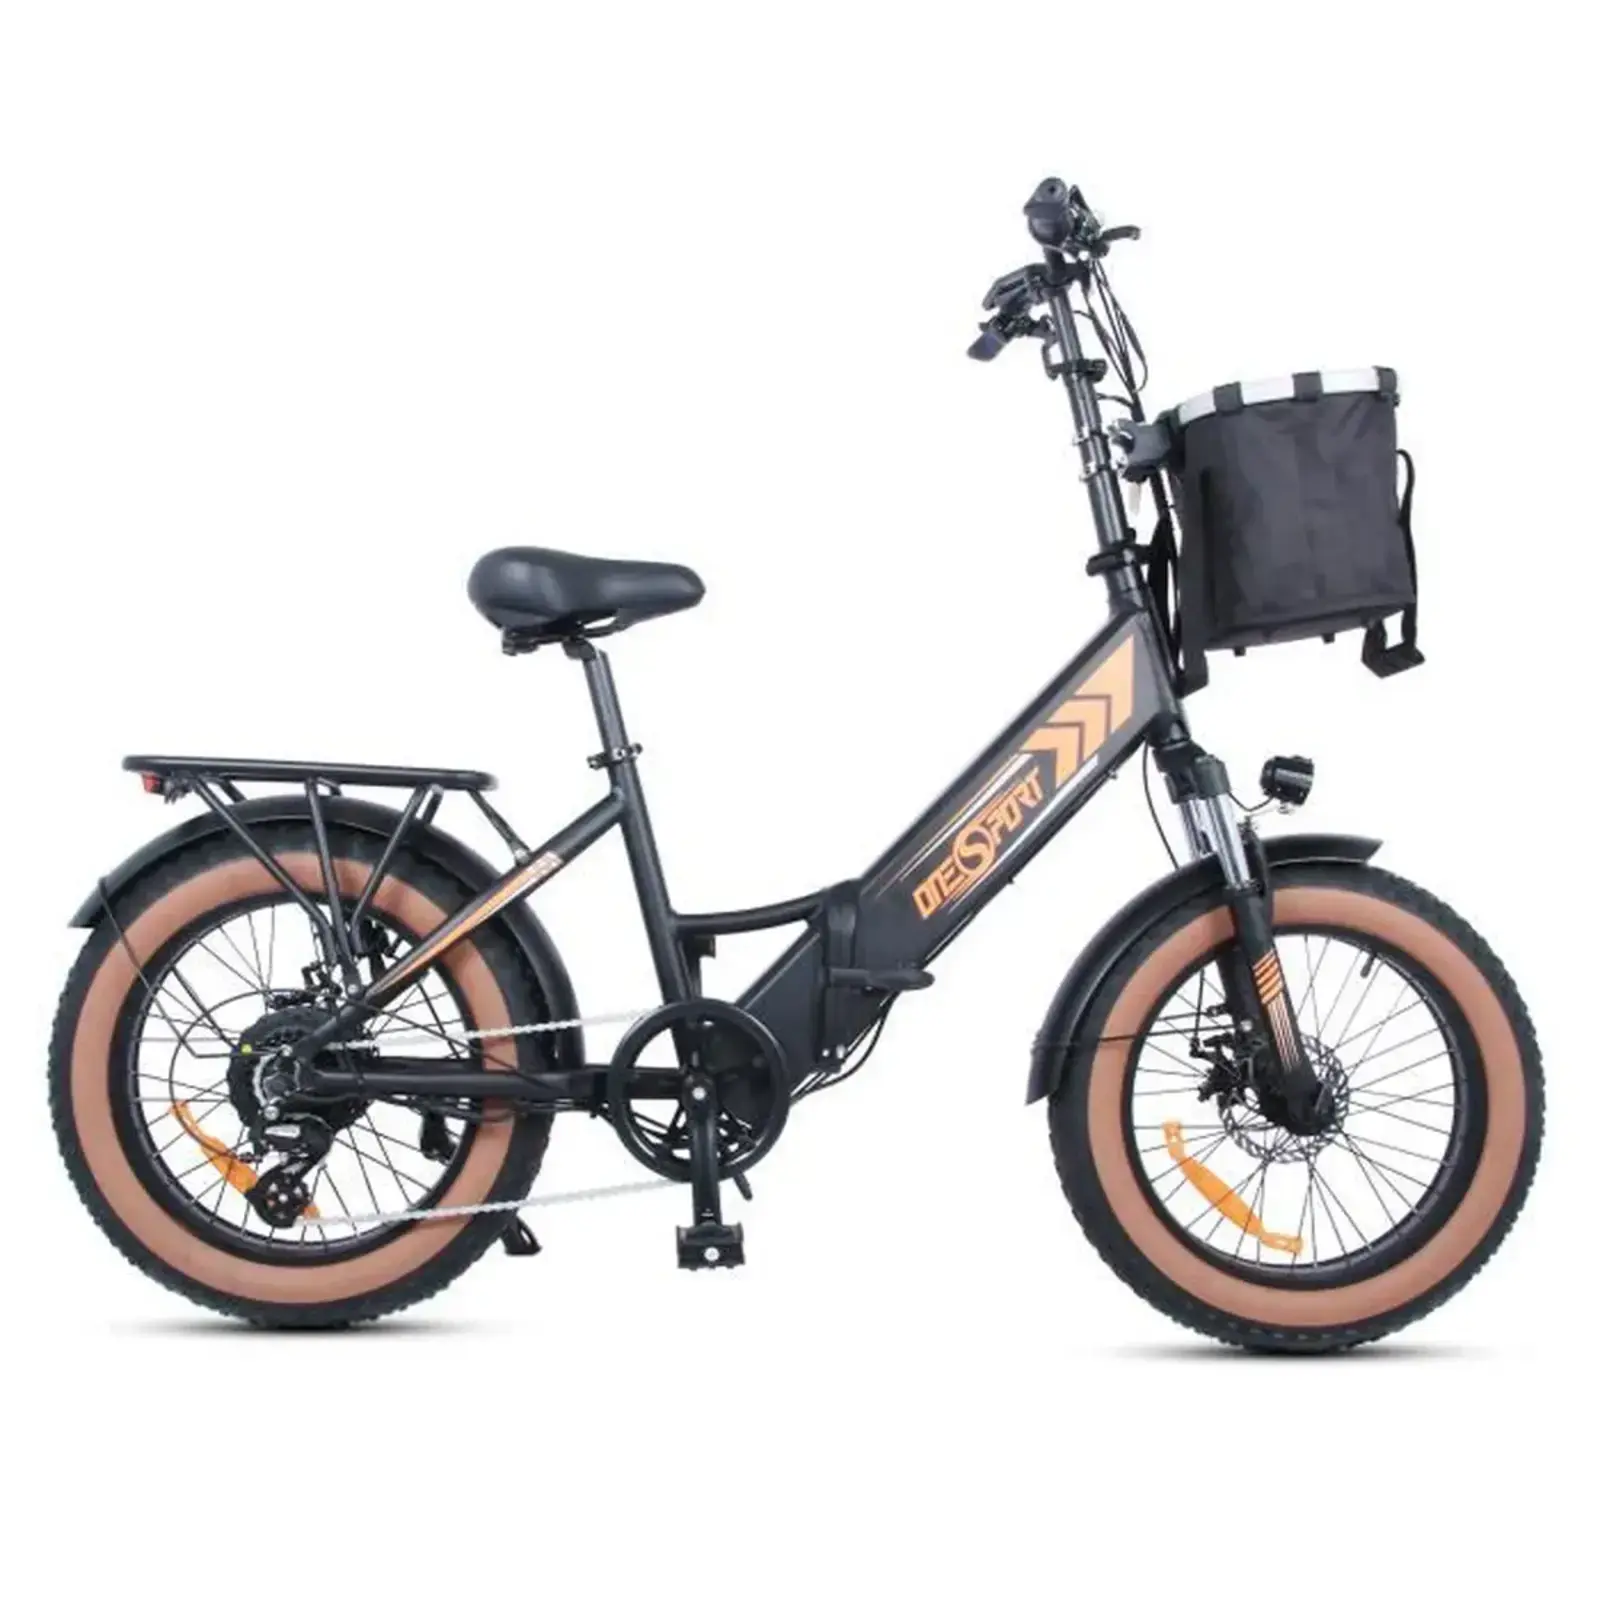 Le vélo à assistance électrique ONESPORT OT29 est en promo jusqu'à la fin des soldes © Cdiscount